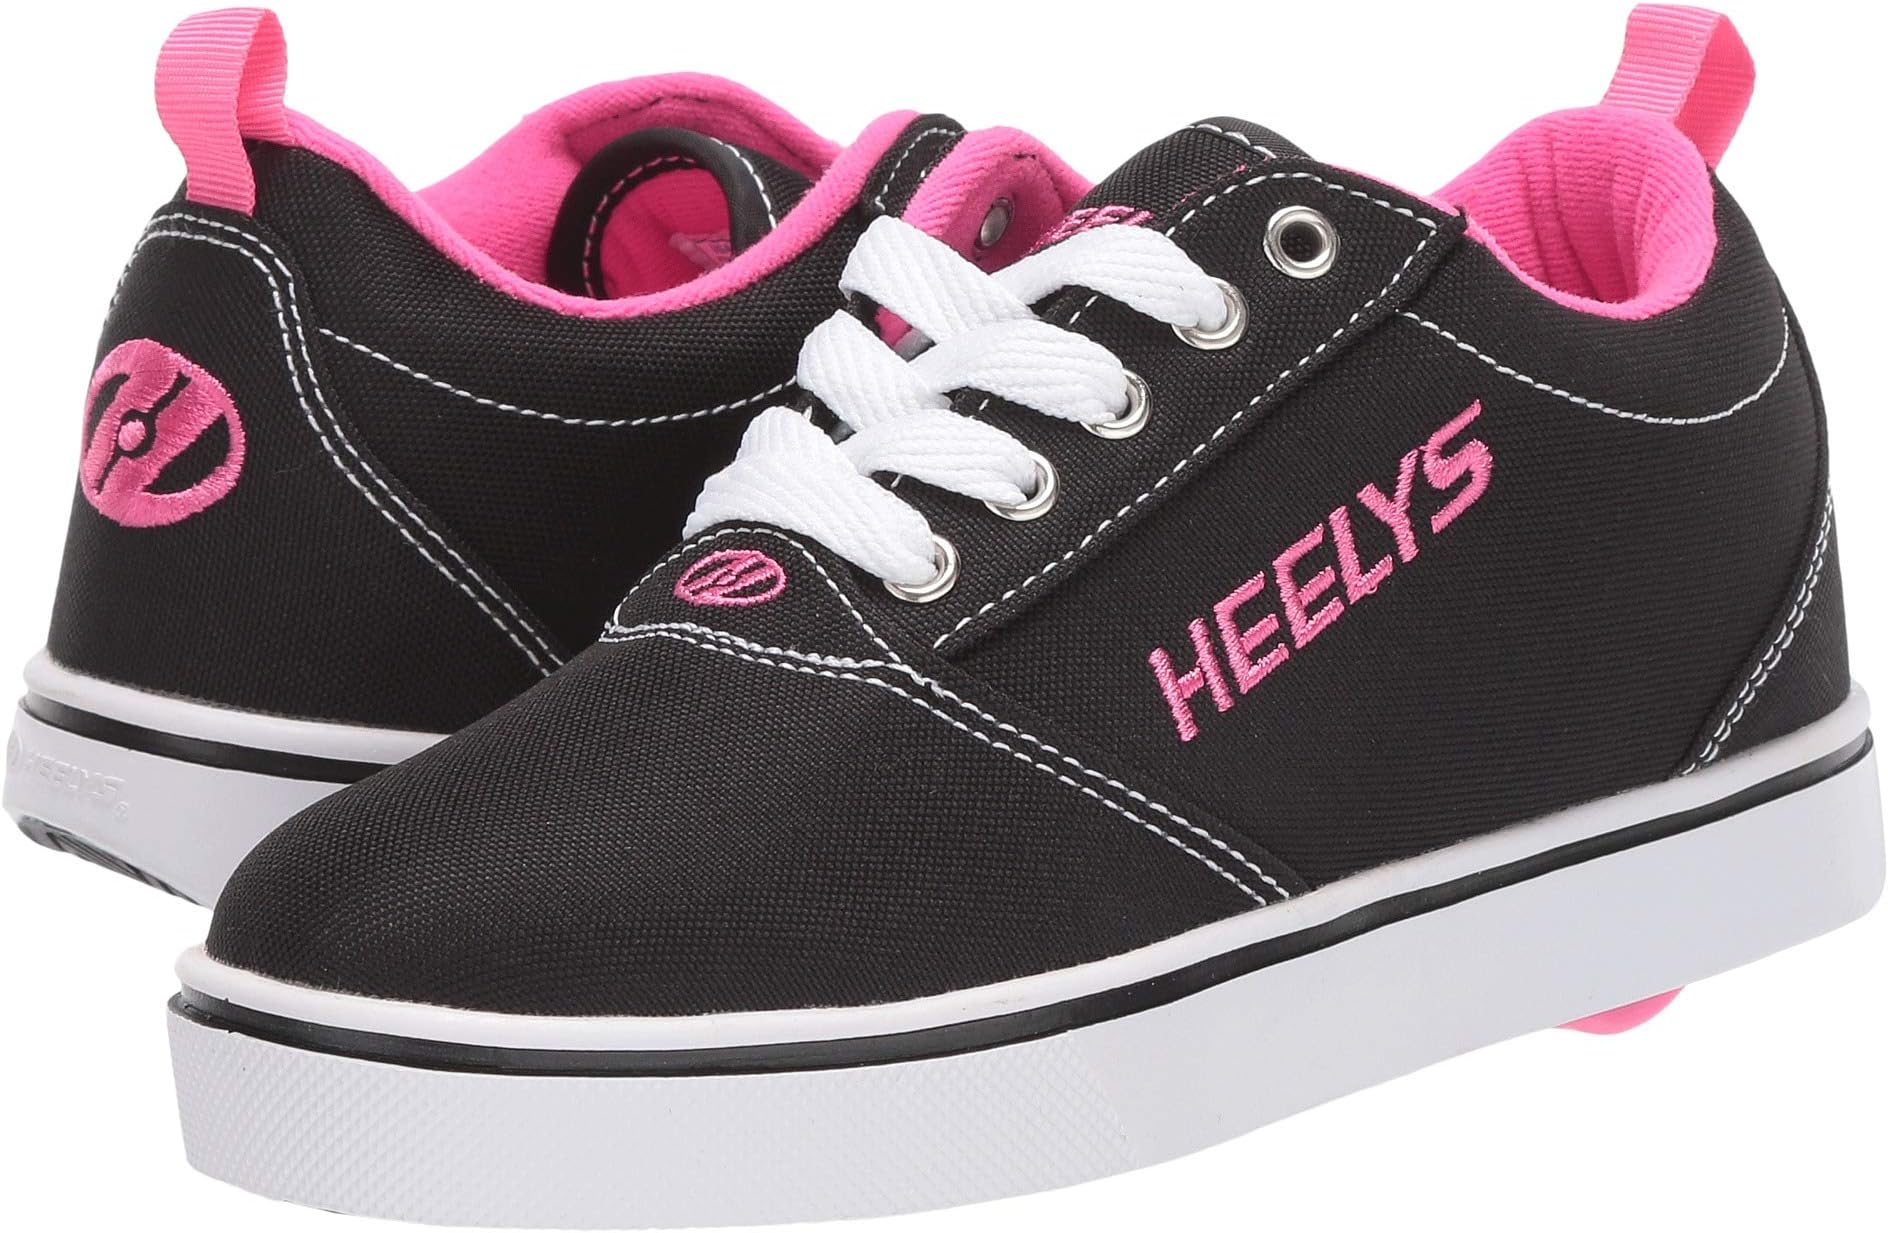 Кроссовки Pro 20 Heelys, цвет Black/White/Pink кроссовки heelys pro 20 drips цвет black white green